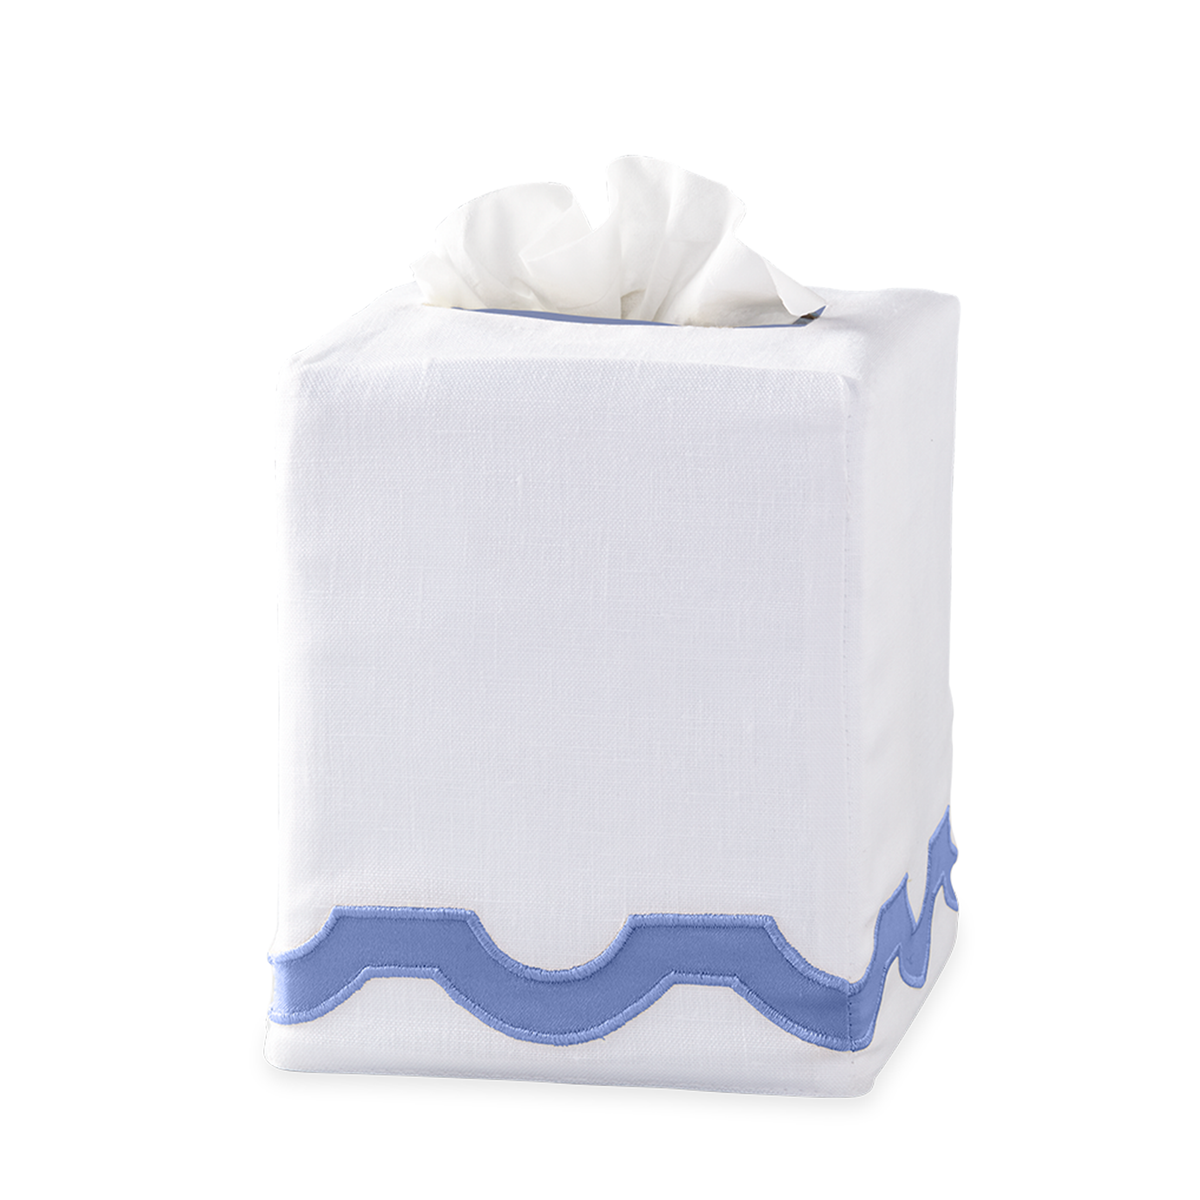 Silo Image of Matouk Mirasol Tissue Box Cover in Azure Color